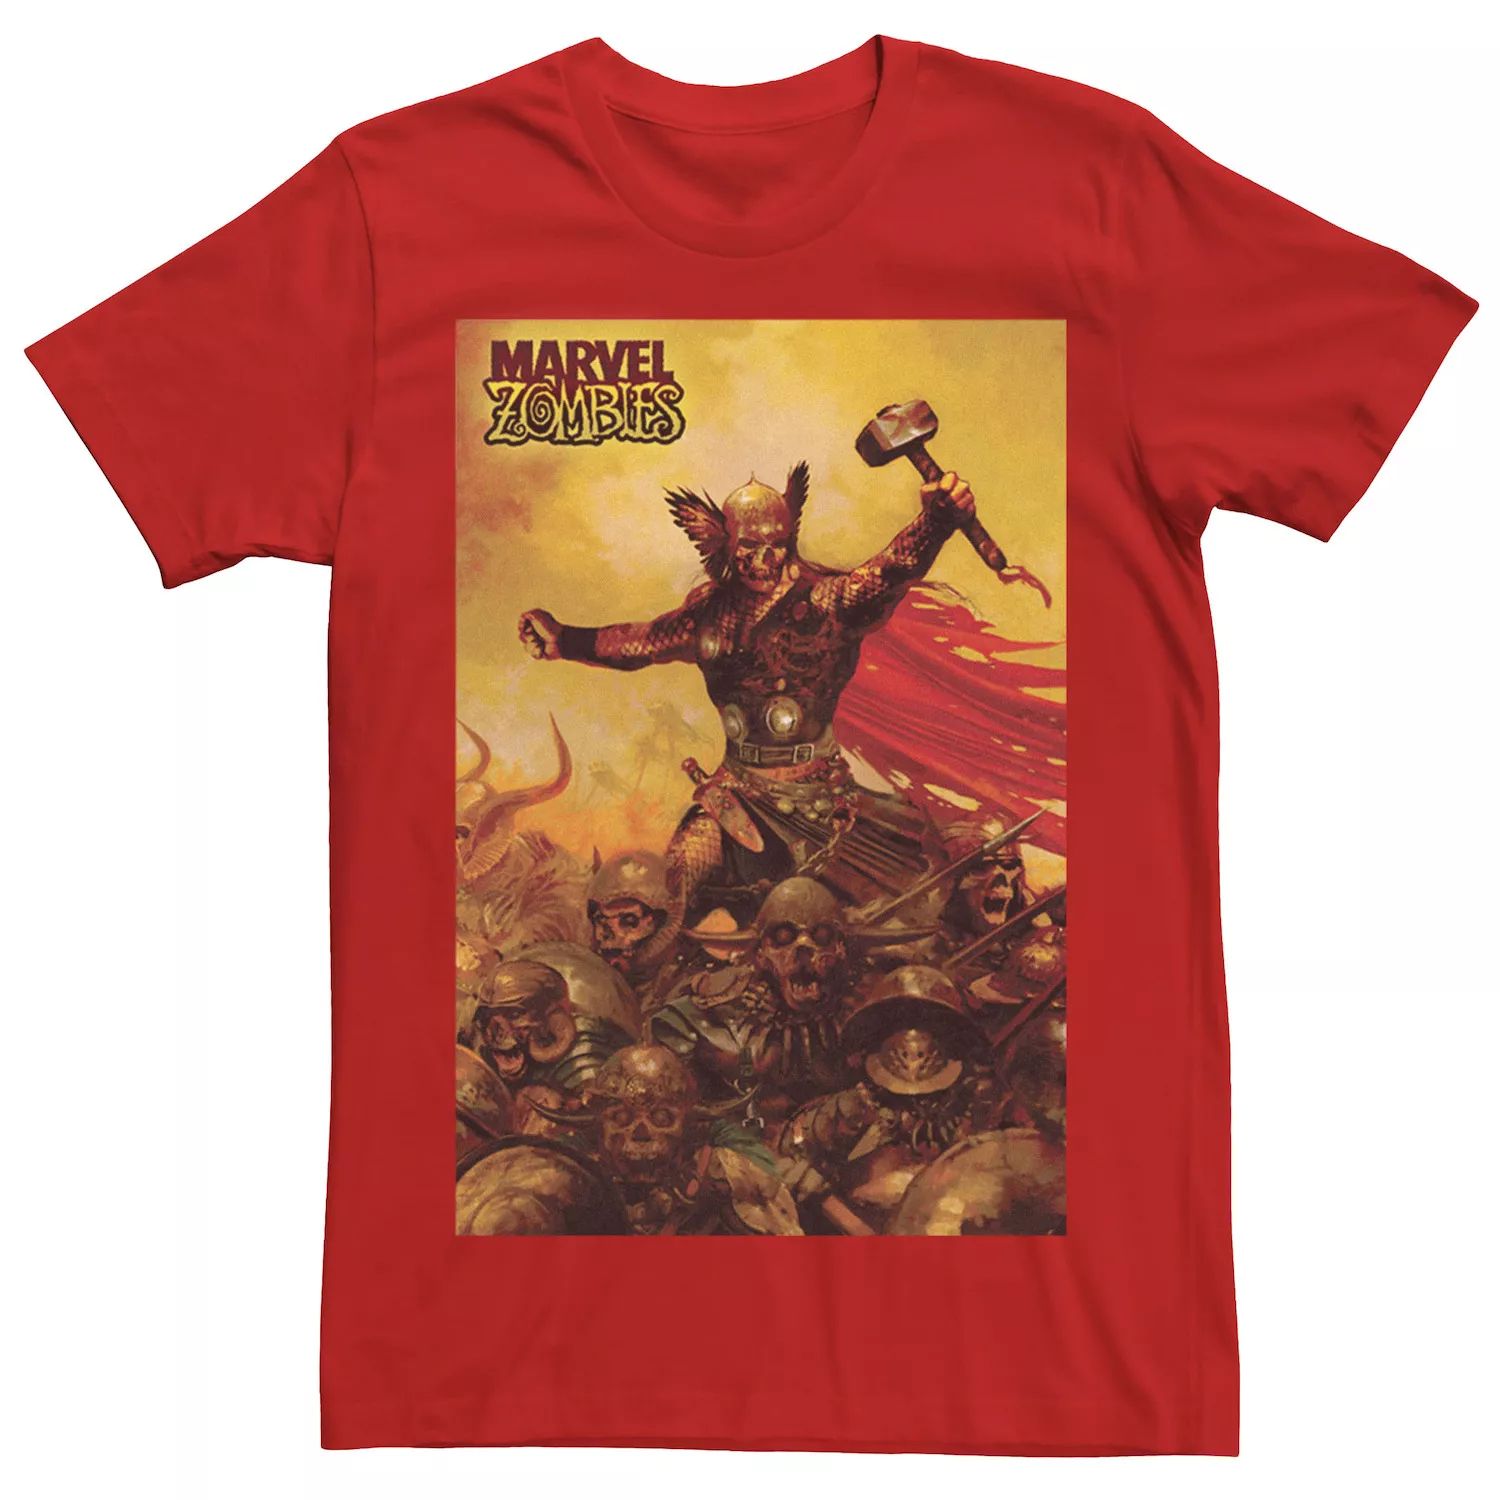 Мужская футболка с графическим плакатом и плакатом «Зомби Тор Зомби» Marvel